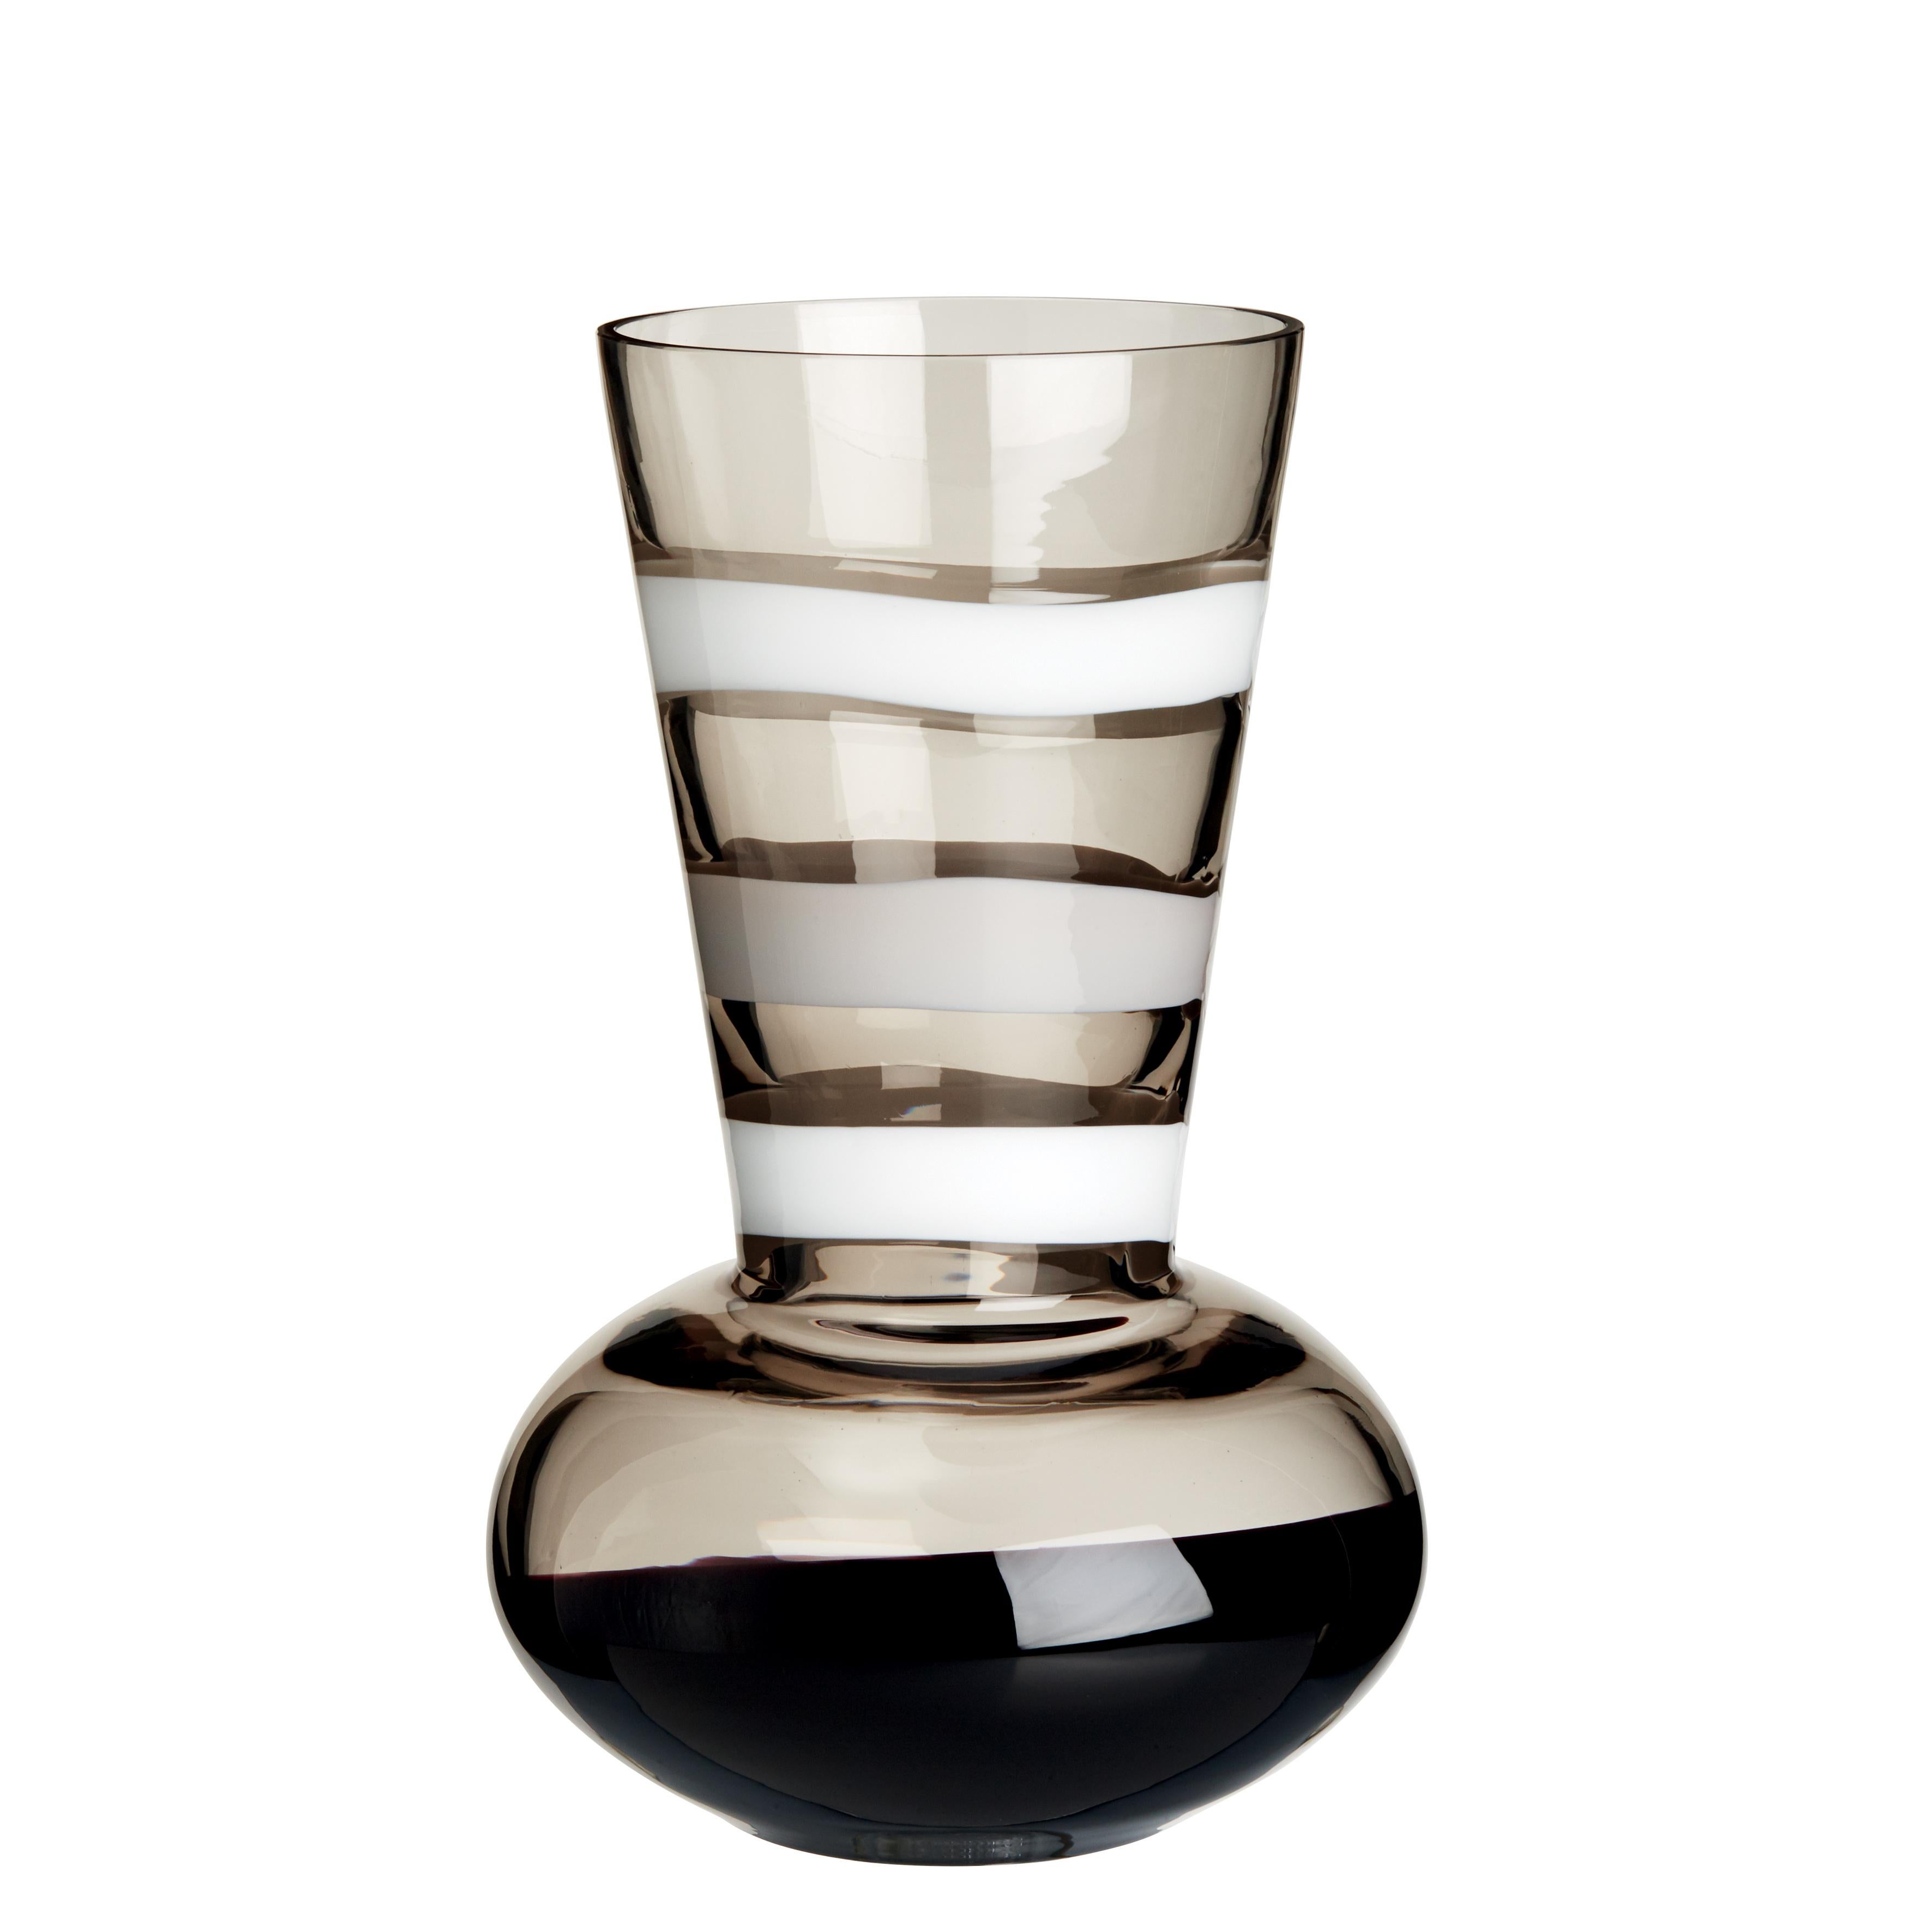 Medium Troncosfera Vase in White, Grey and Black by Carlo Moretti